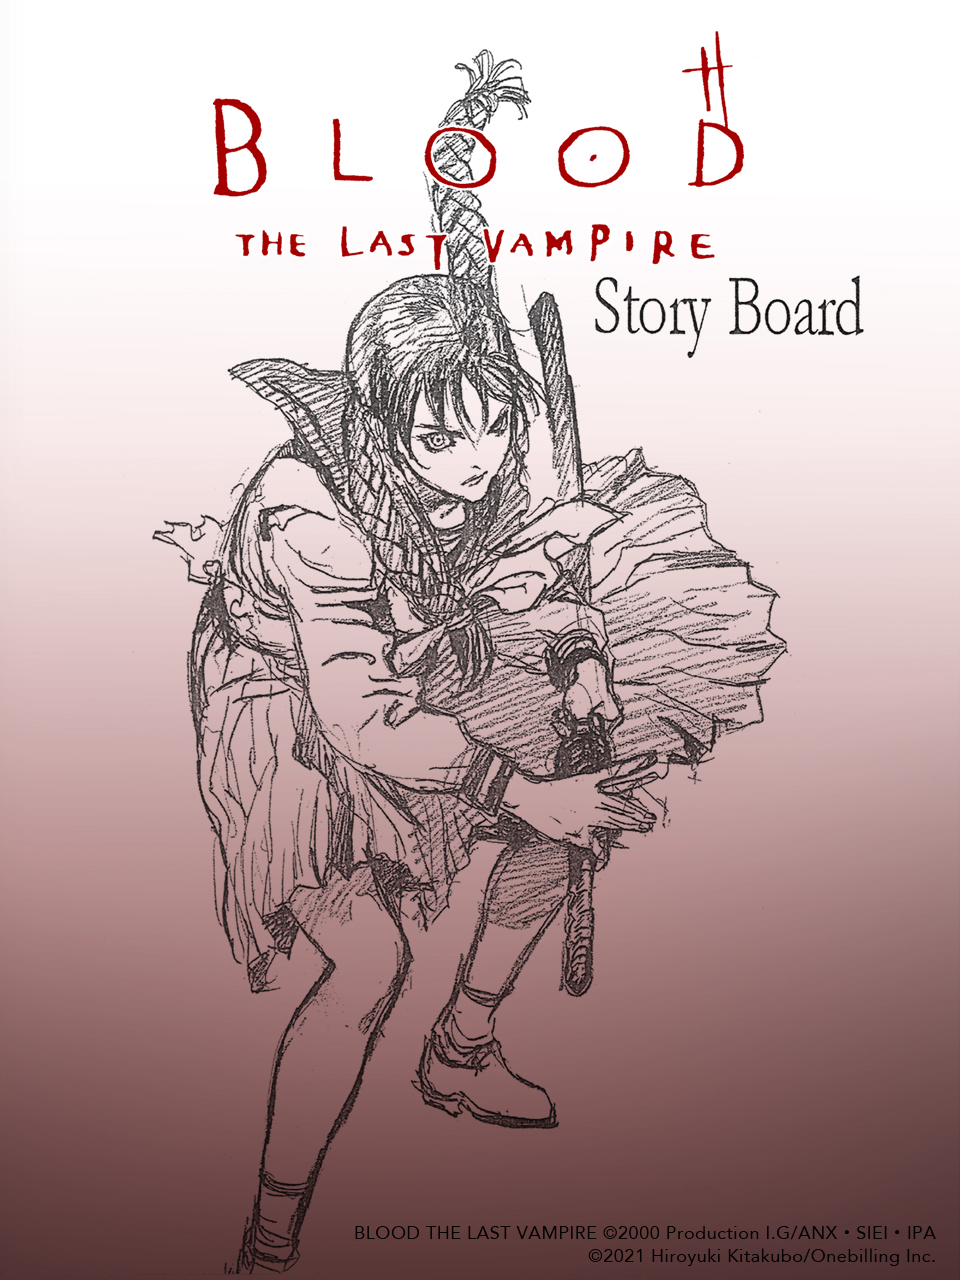 電子書籍絵コンテ集 Blood The Last Vampire Storyboard 発売 株式会社ワンビリング